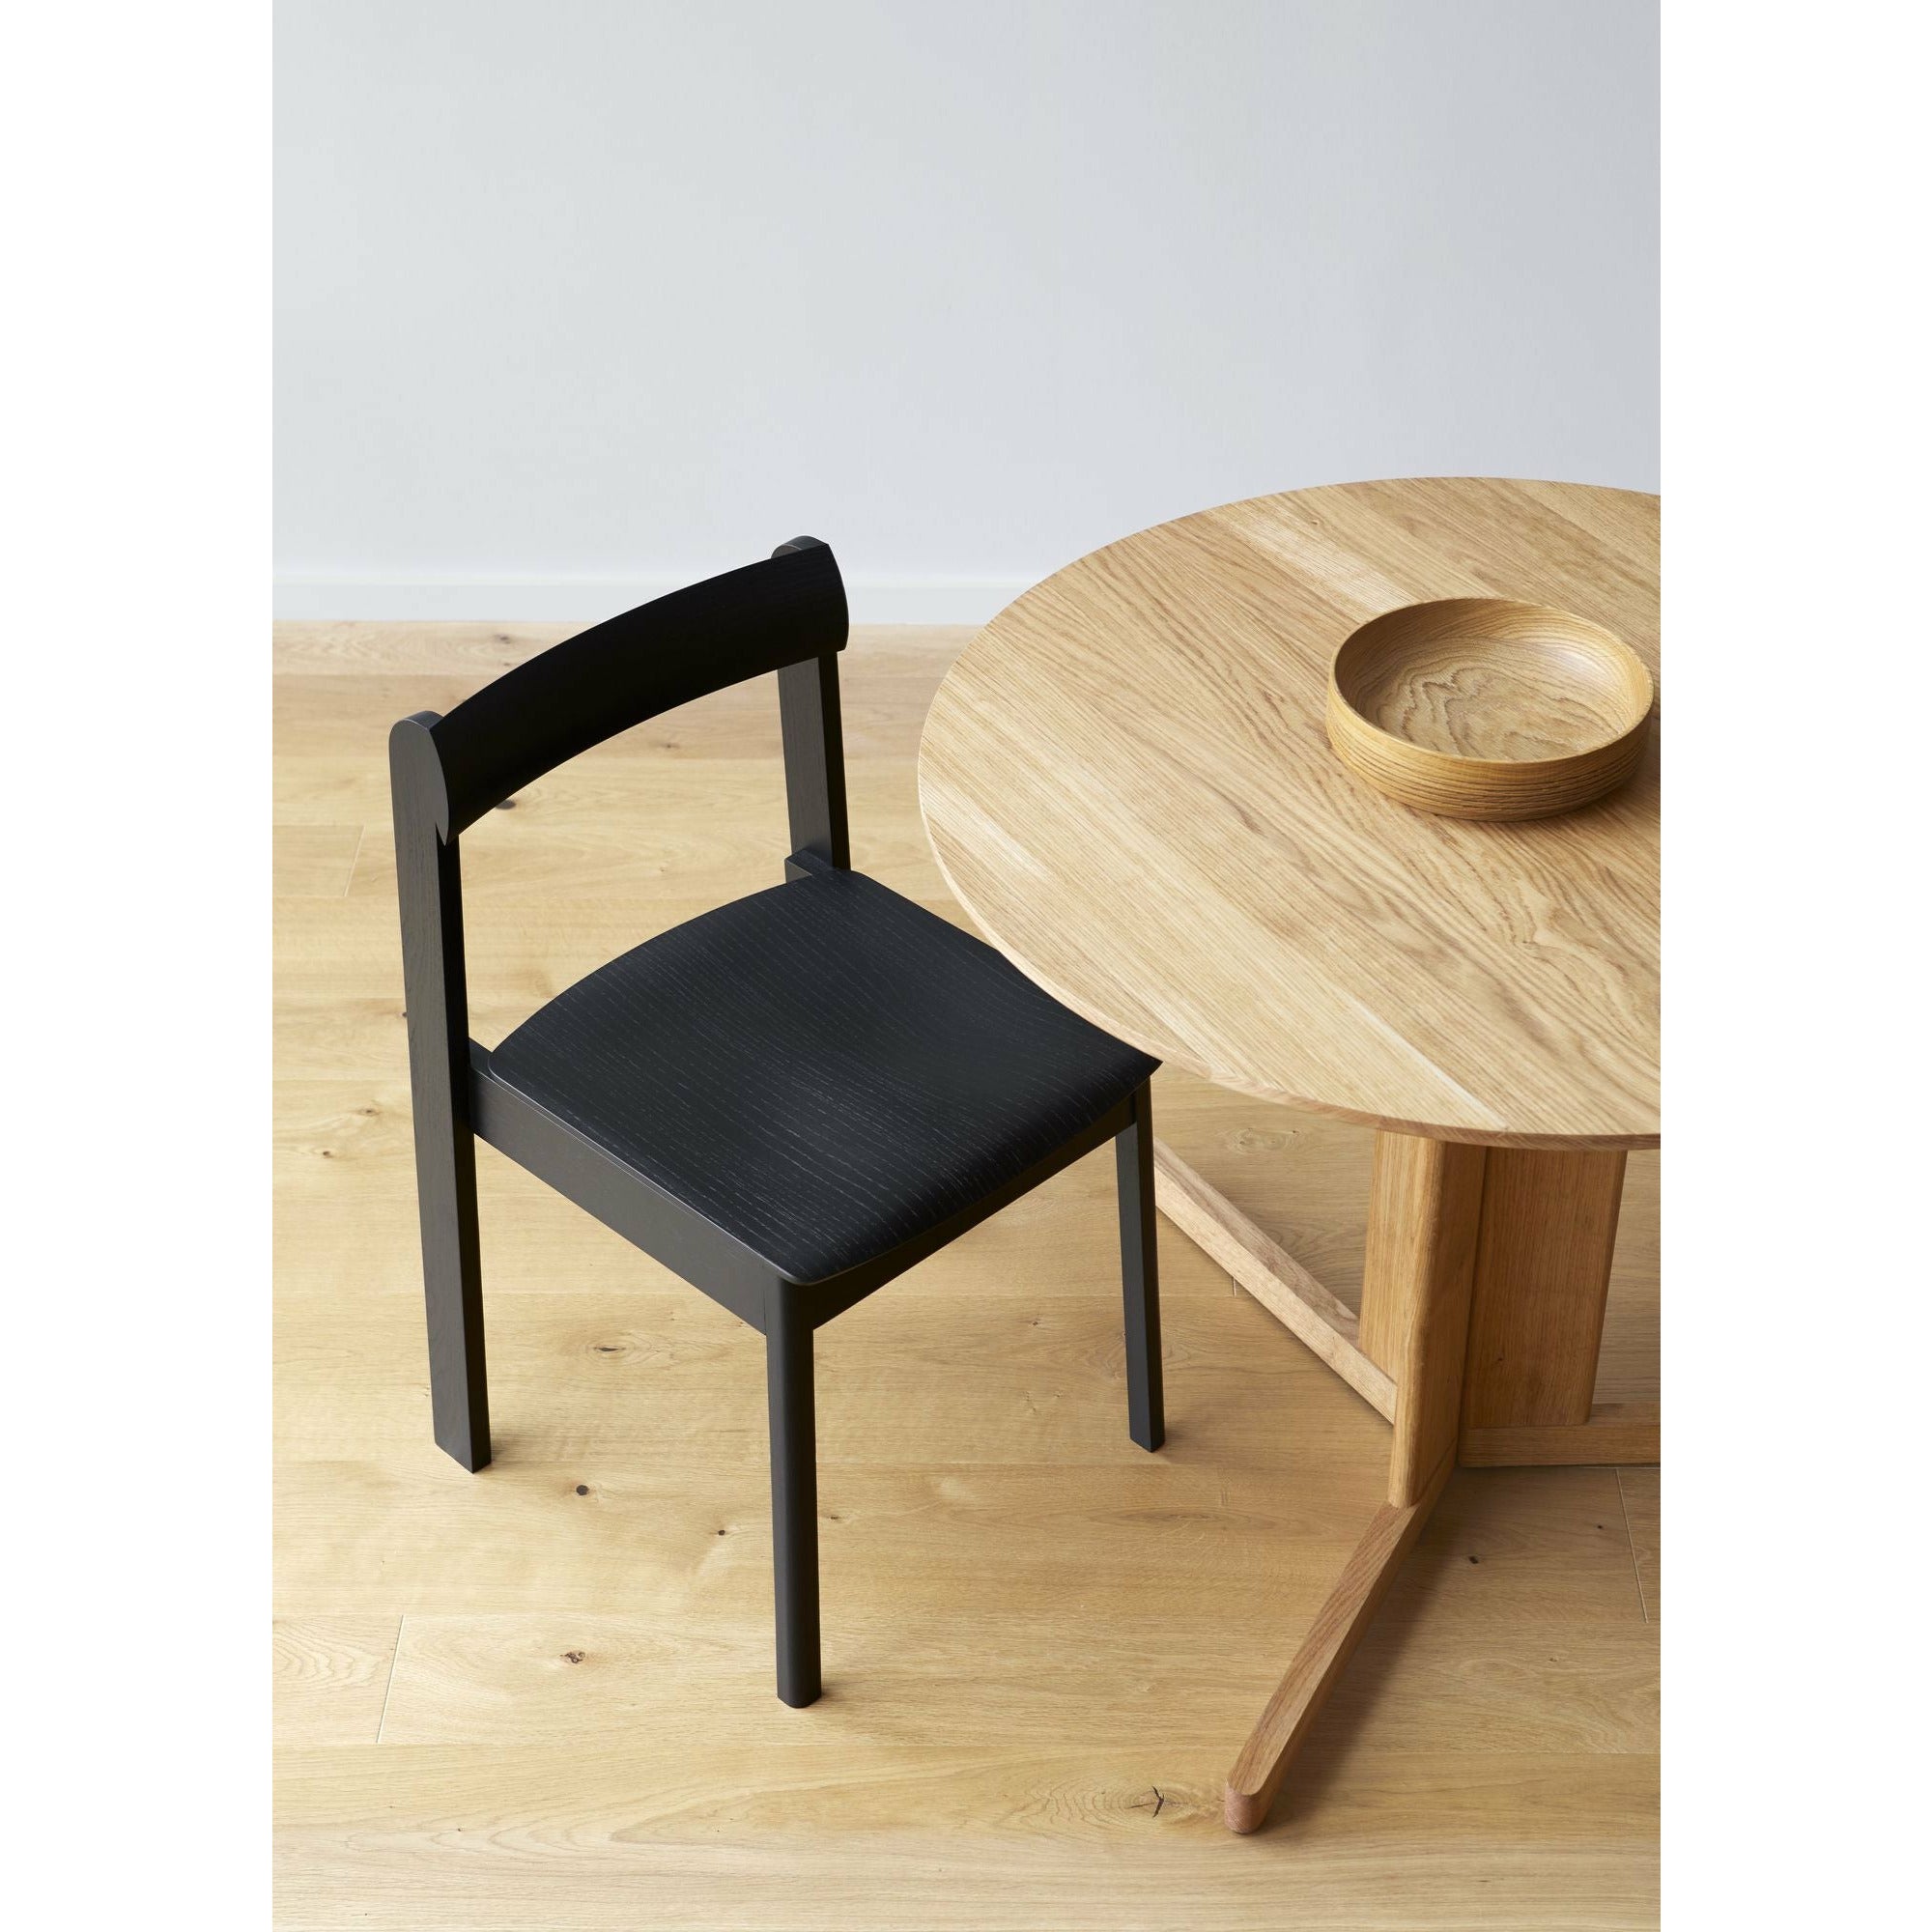 Form & Refine Blauwdrukstoel. Zwart bevlekte eik